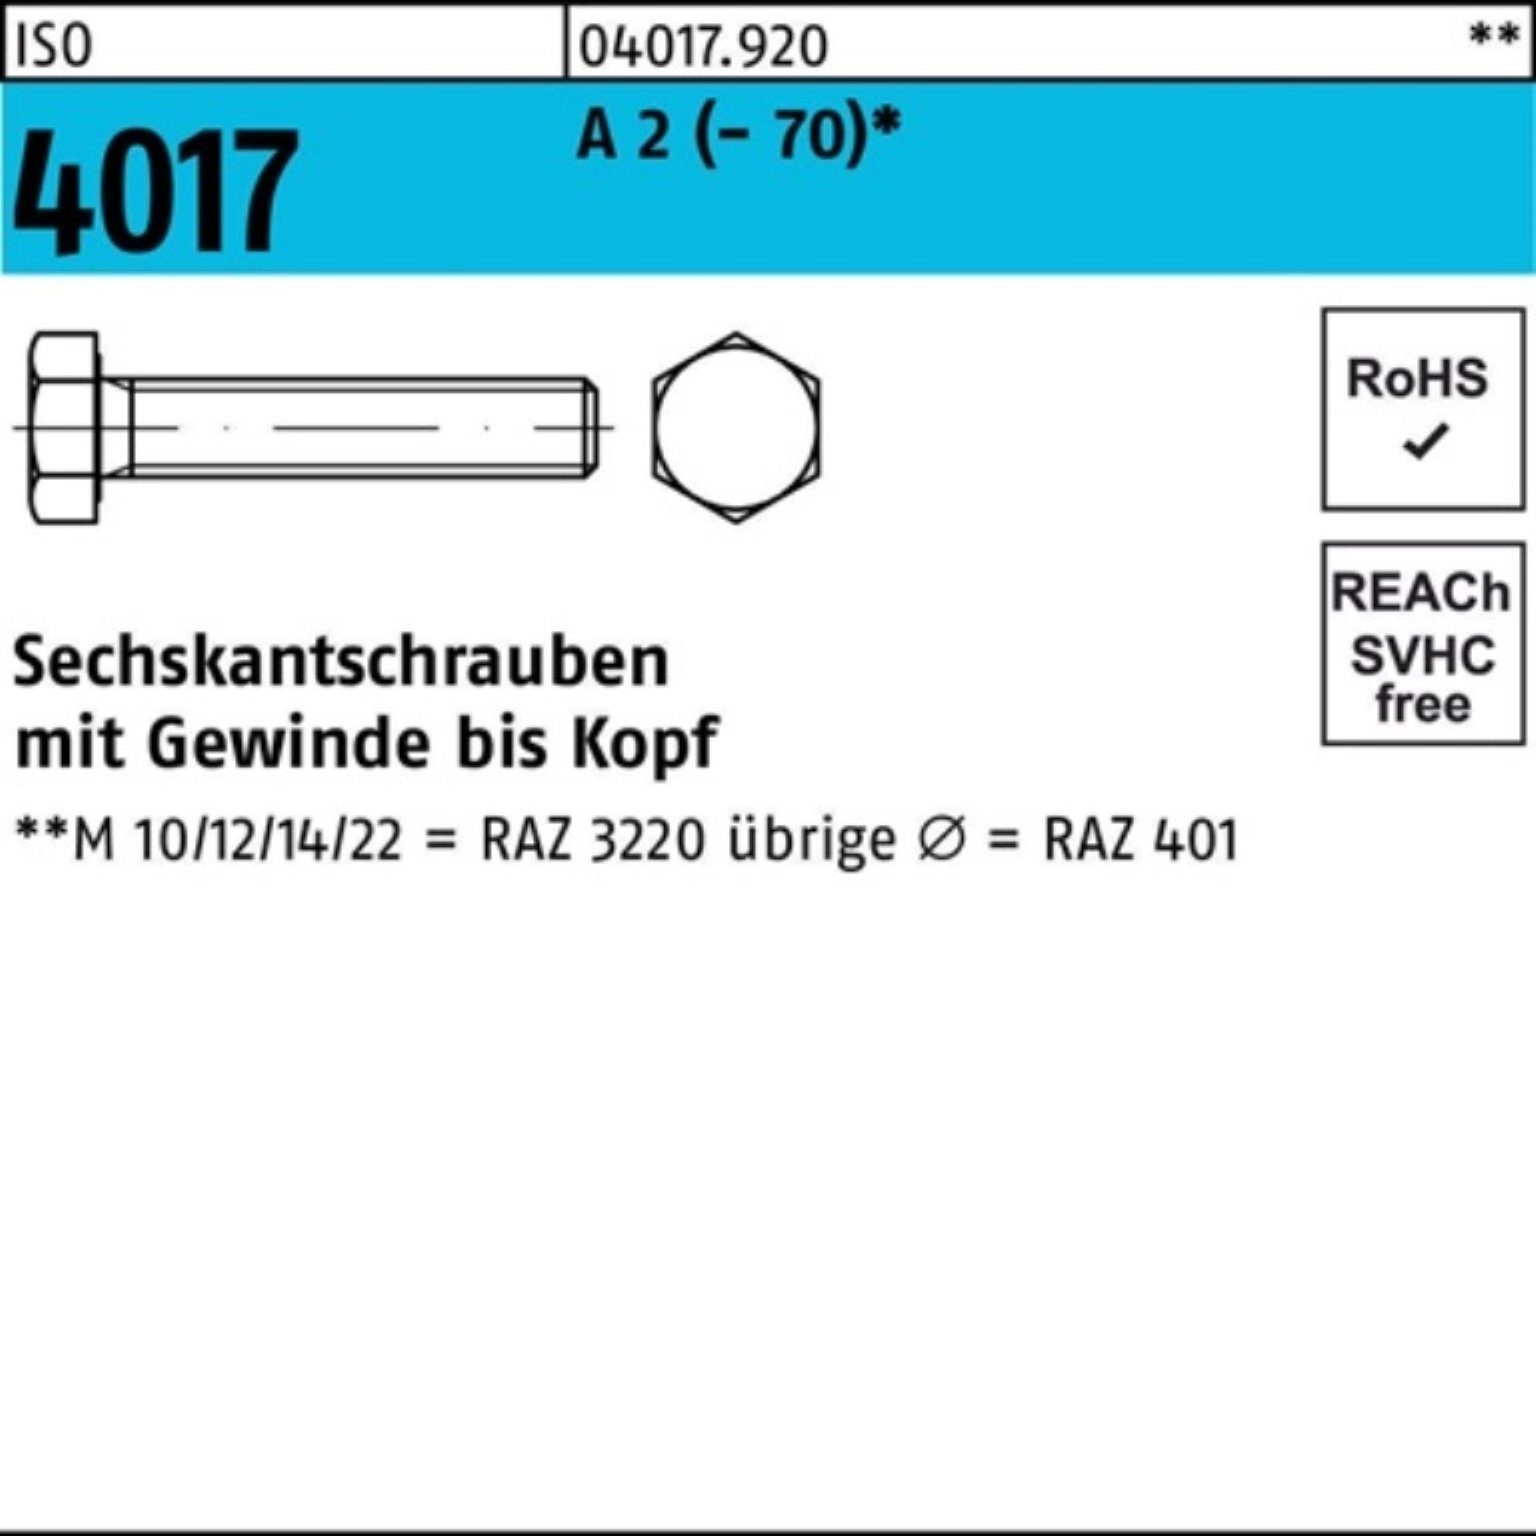 Bufab Sechskantschraube 100er Pack Sechskantschraube 65 VG ISO (70) 100 4017 M10x Stück 2 A